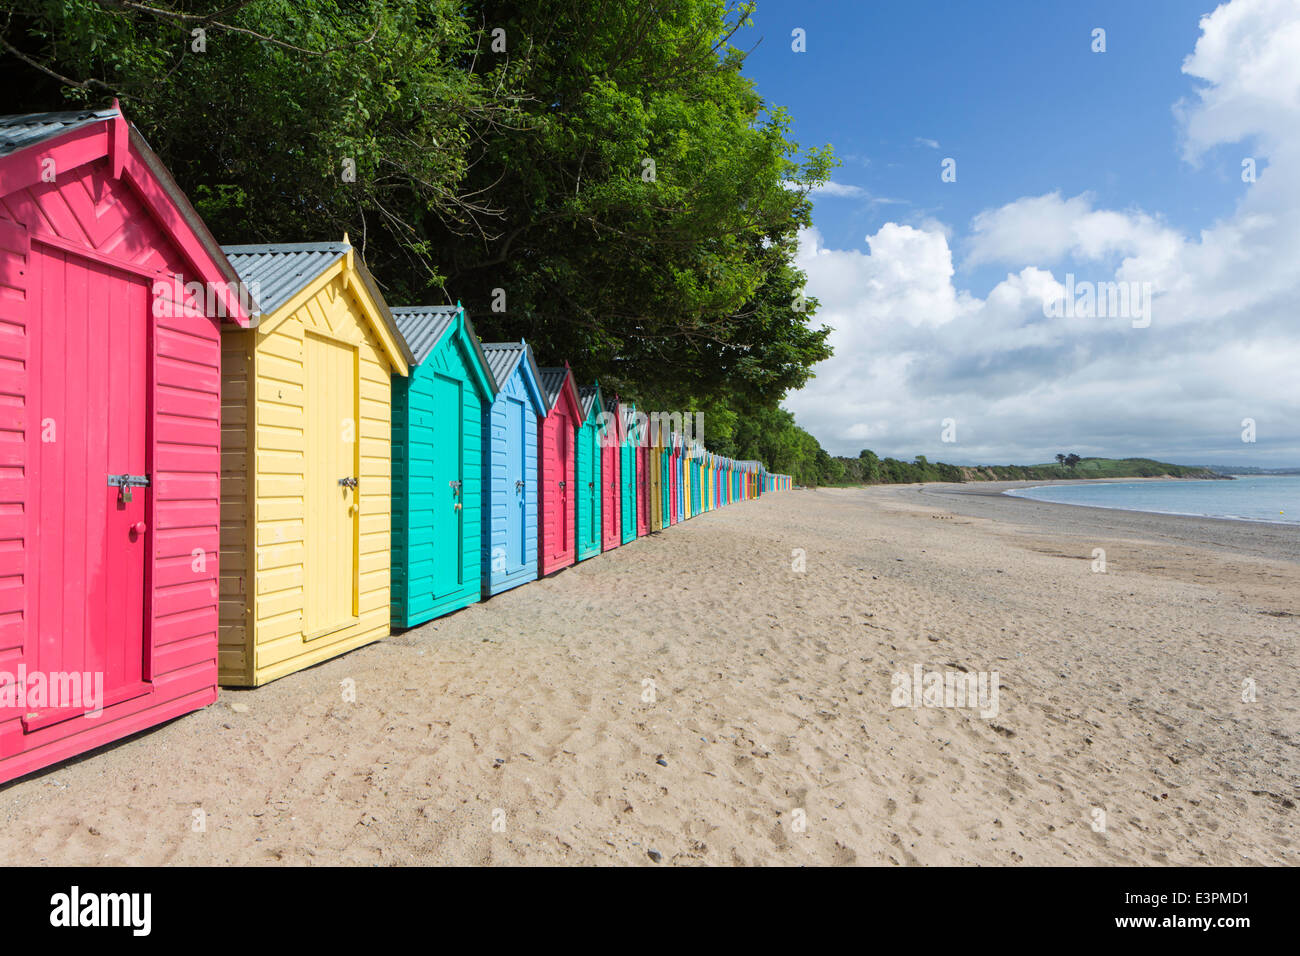 Colourful beach huts at Llanbedrog on the Llyn Peninsula, North Wales, UK Stock Photo